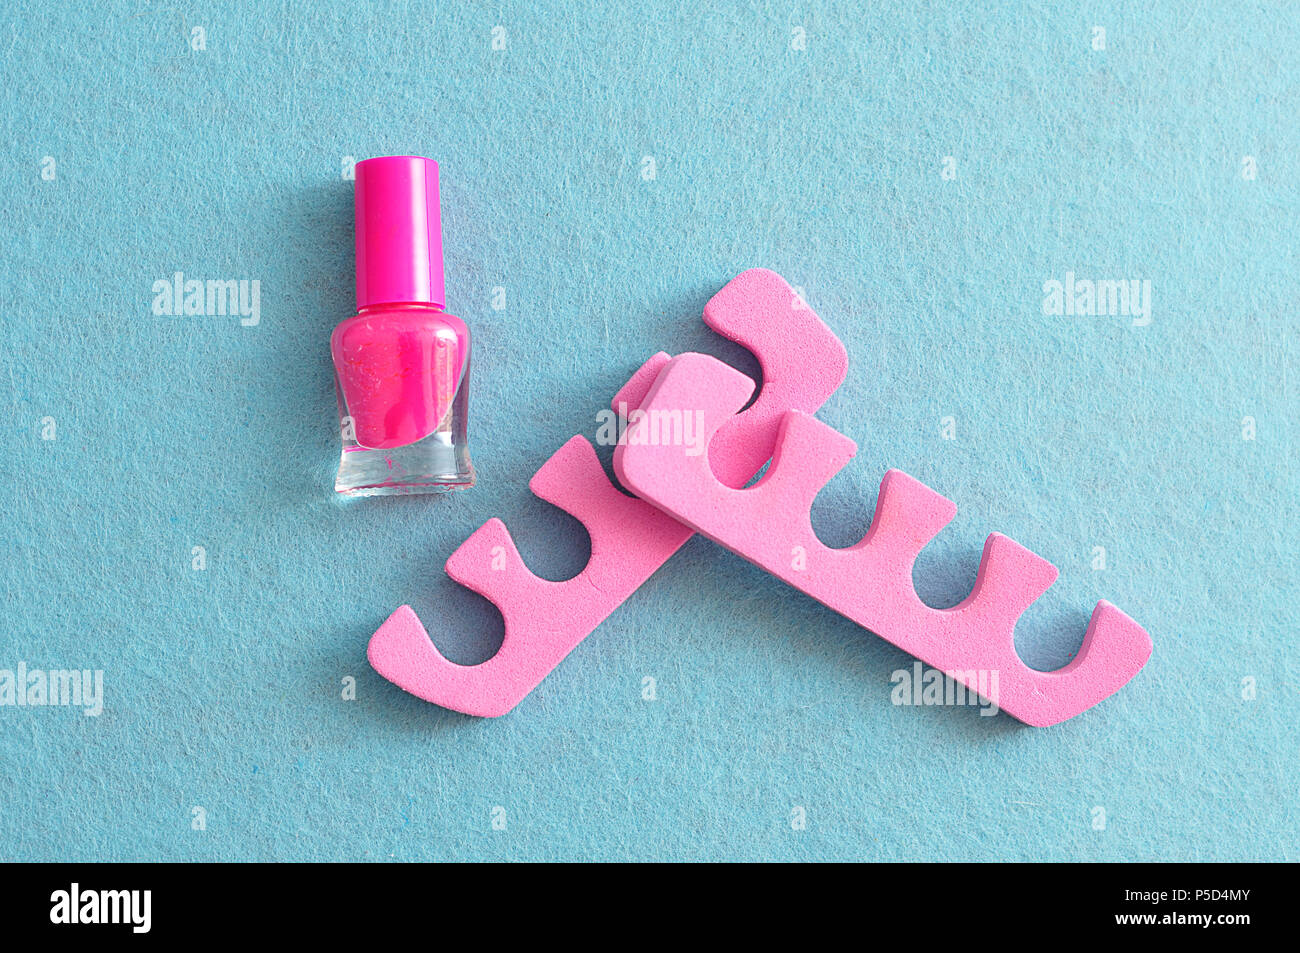 7. Nail polish drawer dividers - wide 9